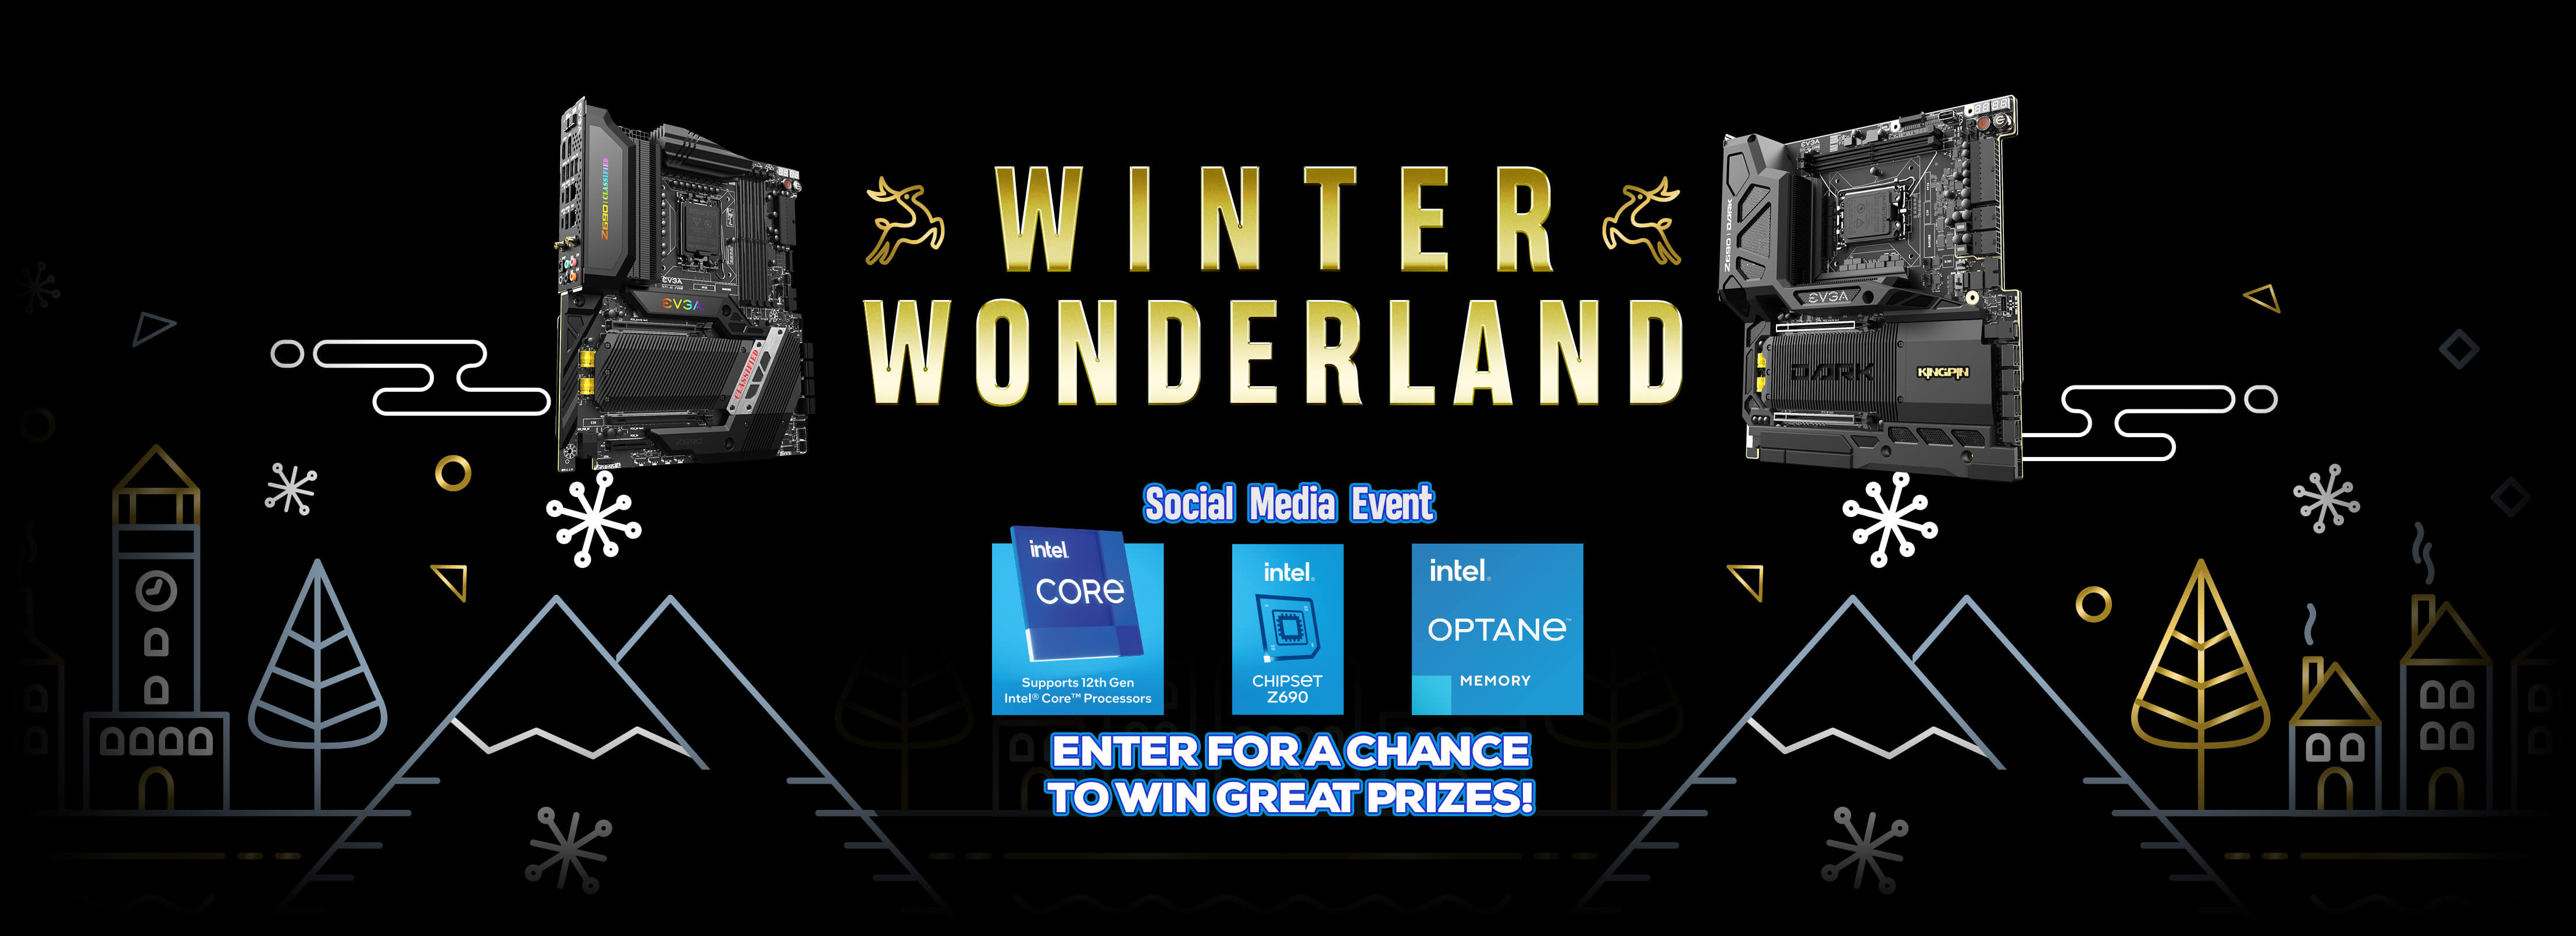 Winter Wonderland Social Media Event